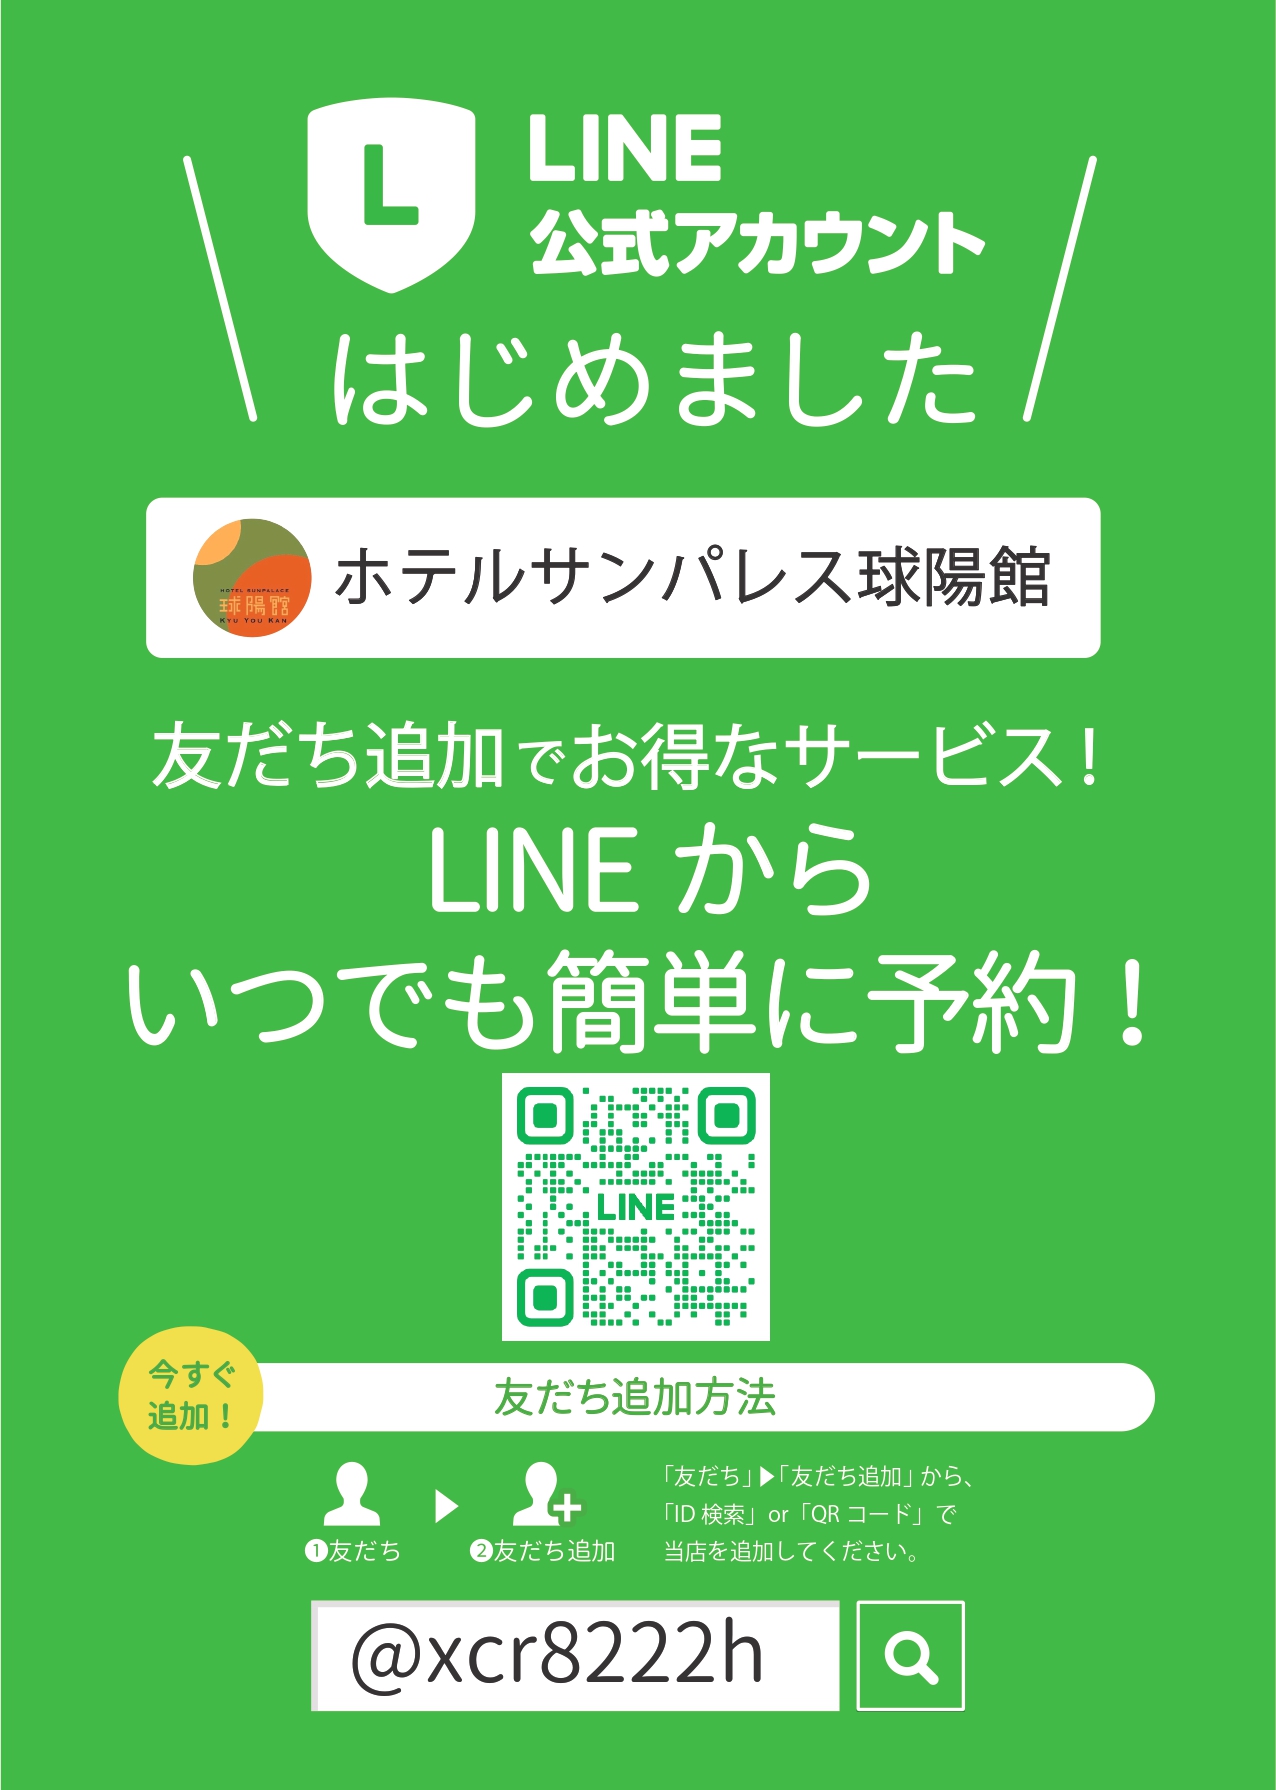 LINE公式アカウント「友だち募集中♪」